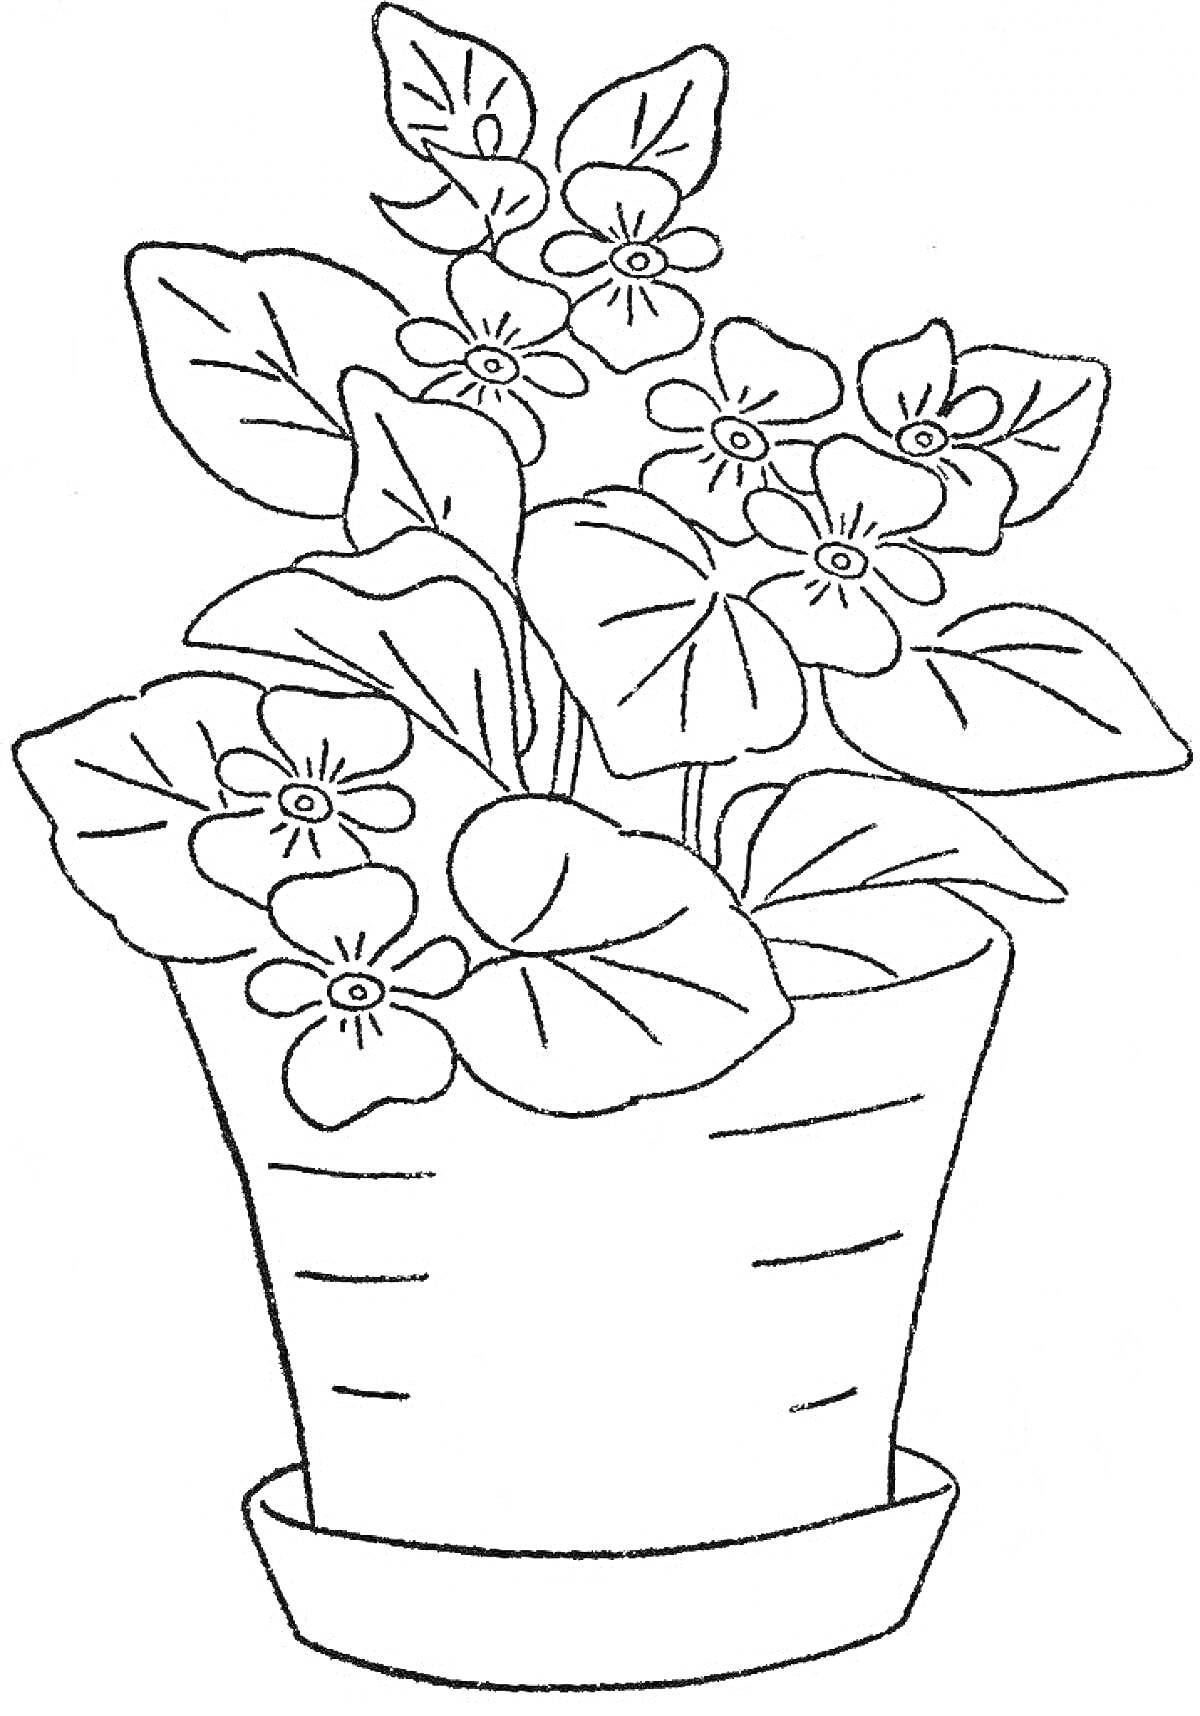 Раскраска Горшок с цветущим комнатным растением и большими листьями